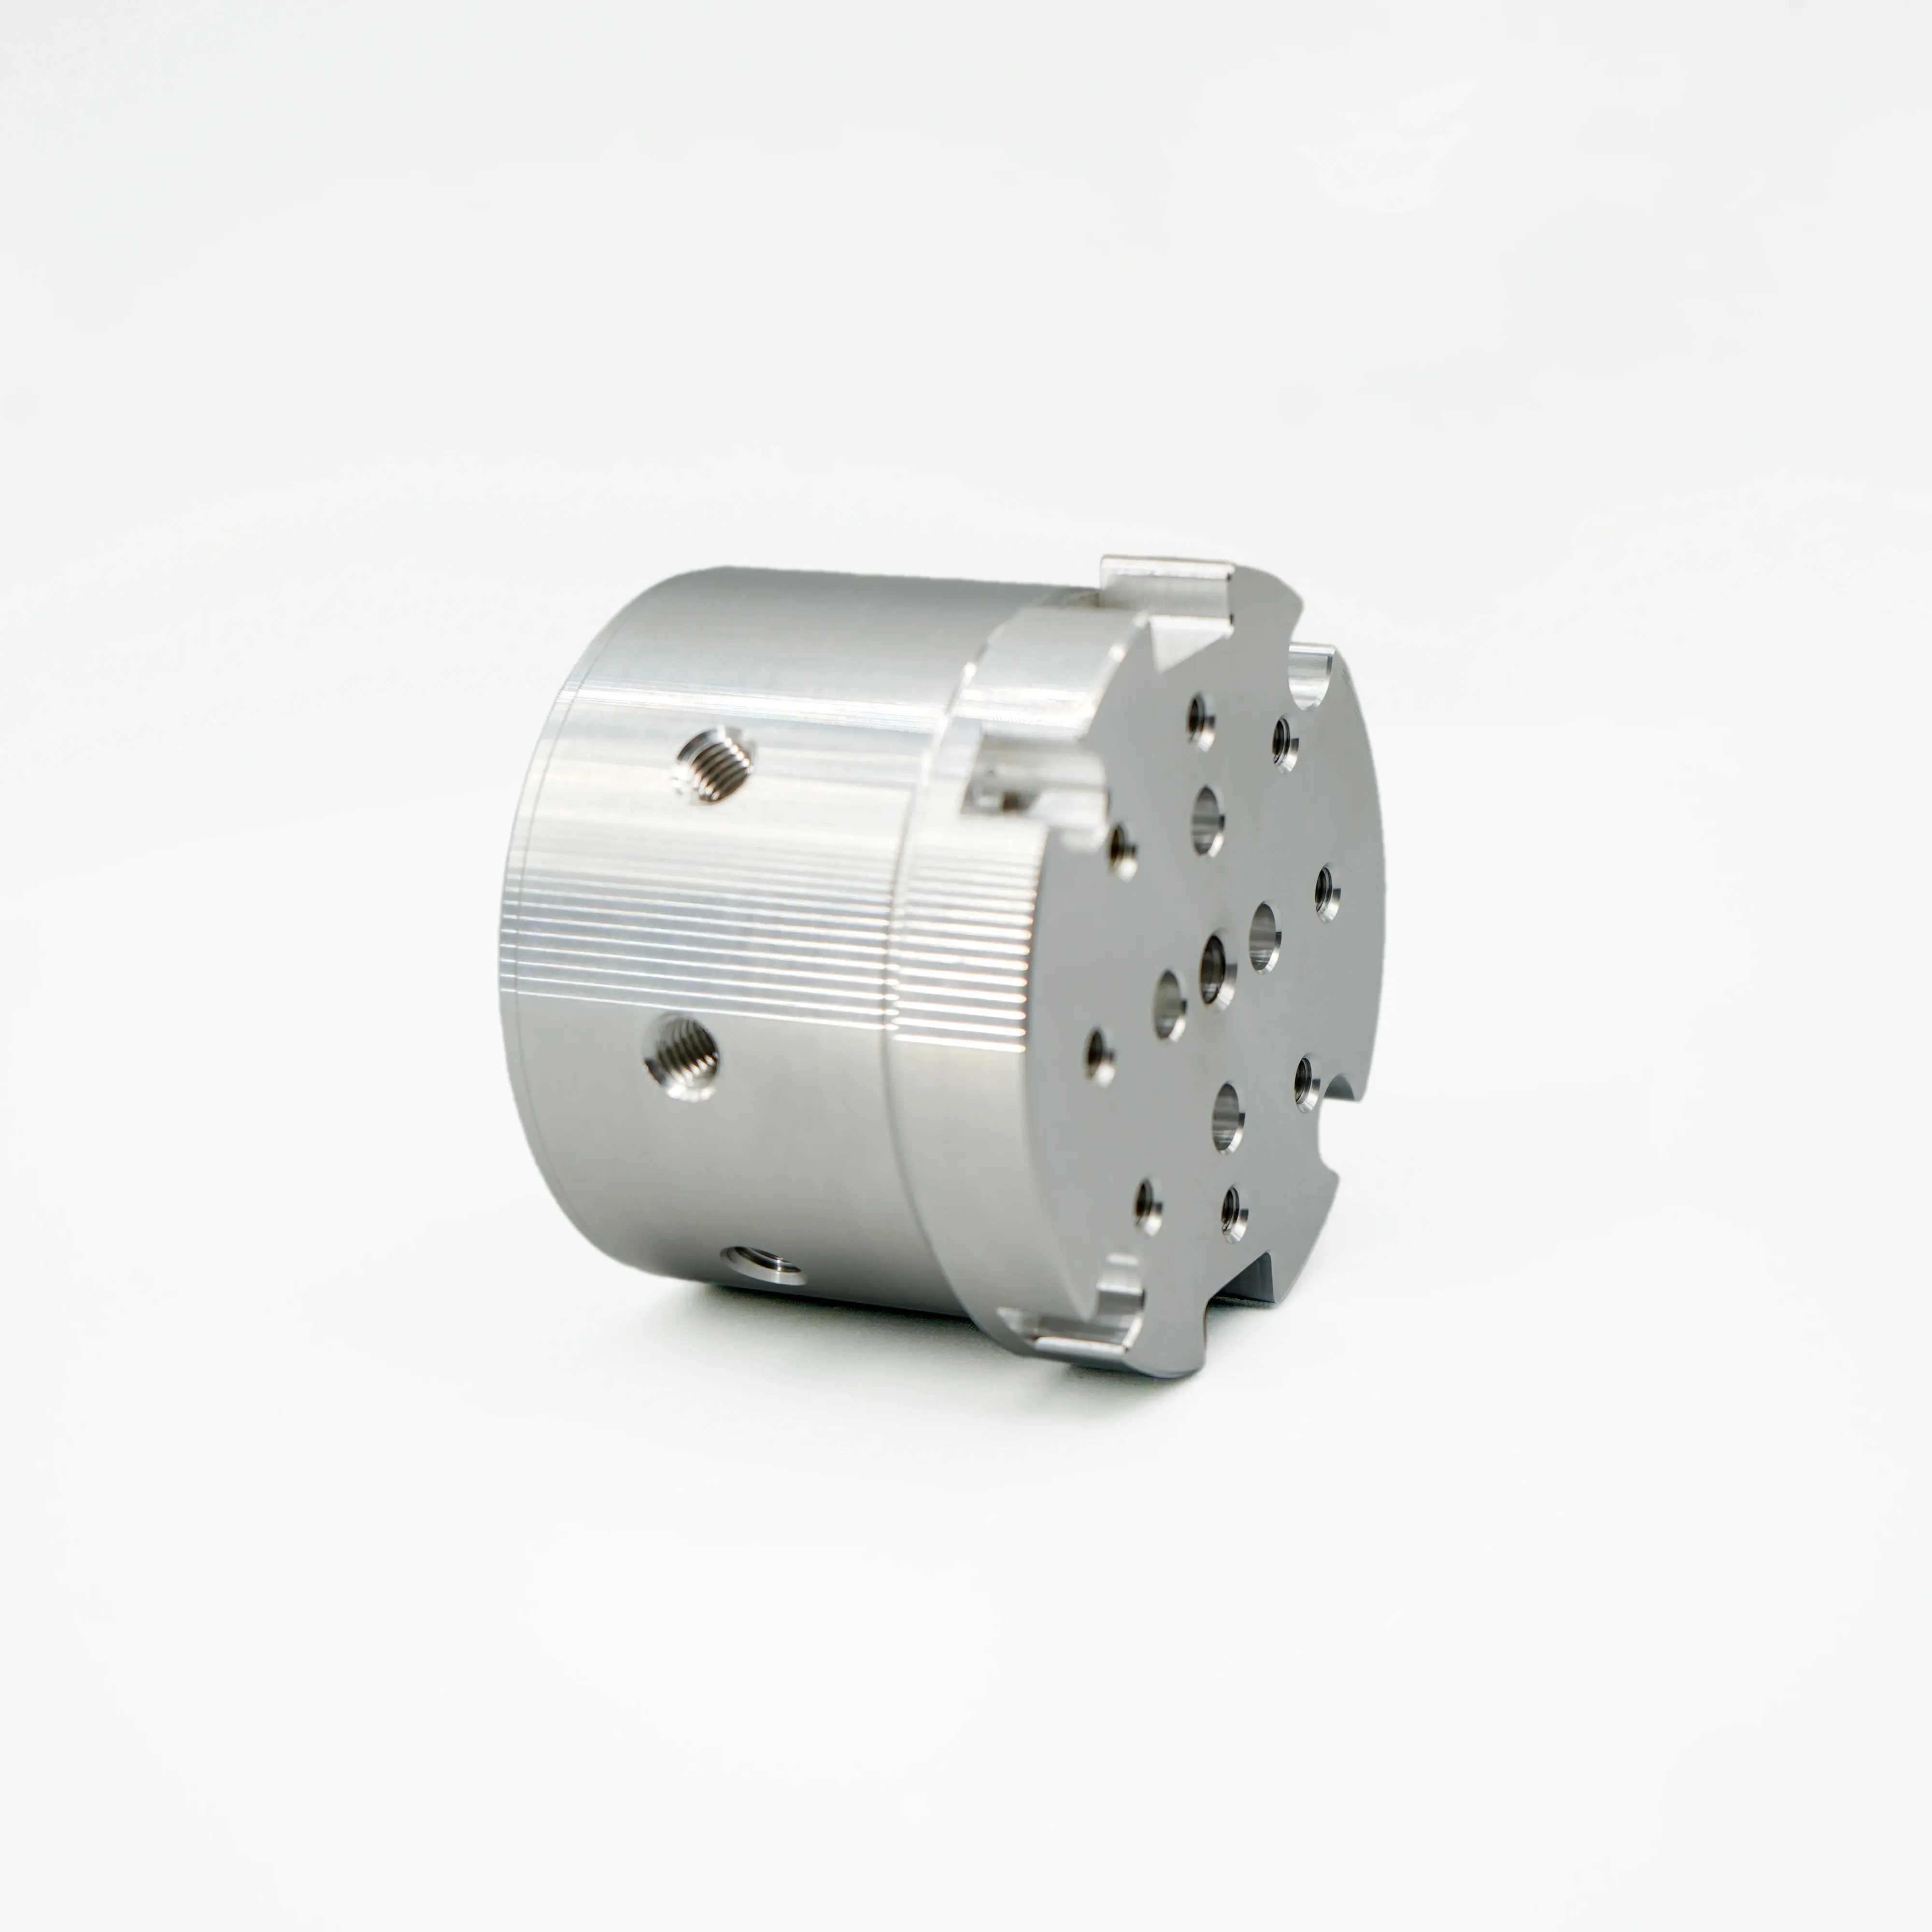 Pezzi di ricambio della pompa idraulica in lega di alluminio anodizzato personalizzati per l'industria automobilistica